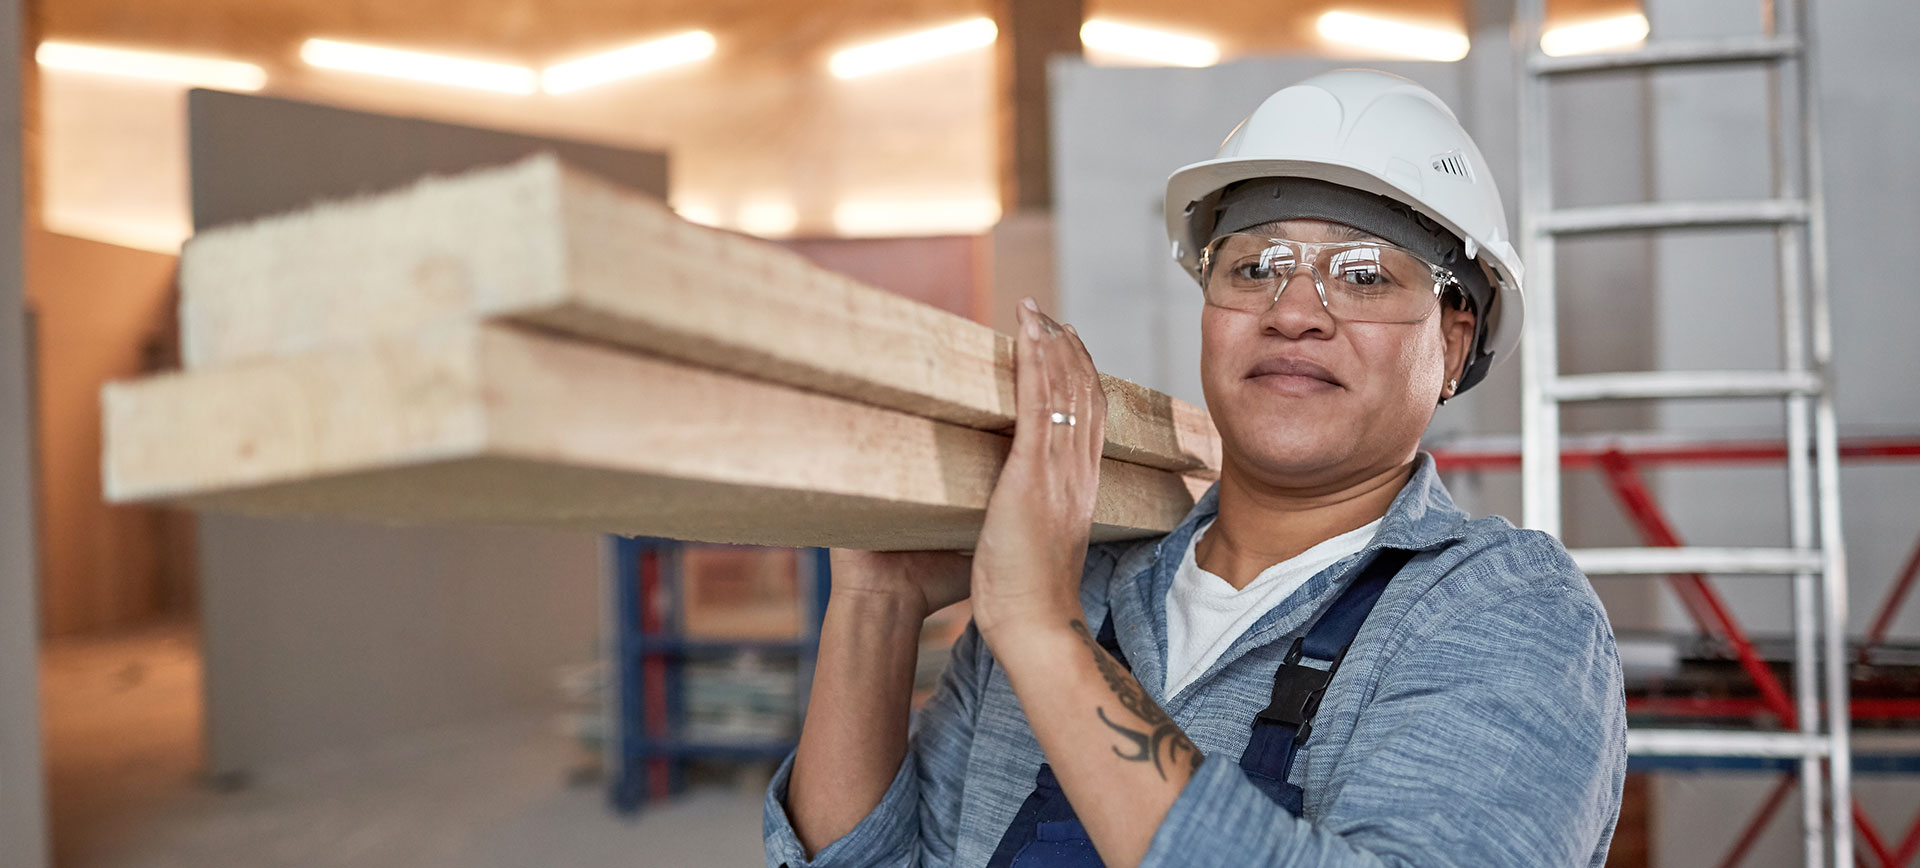 Construire une industrie de la construction plus inclusive pour les femmes